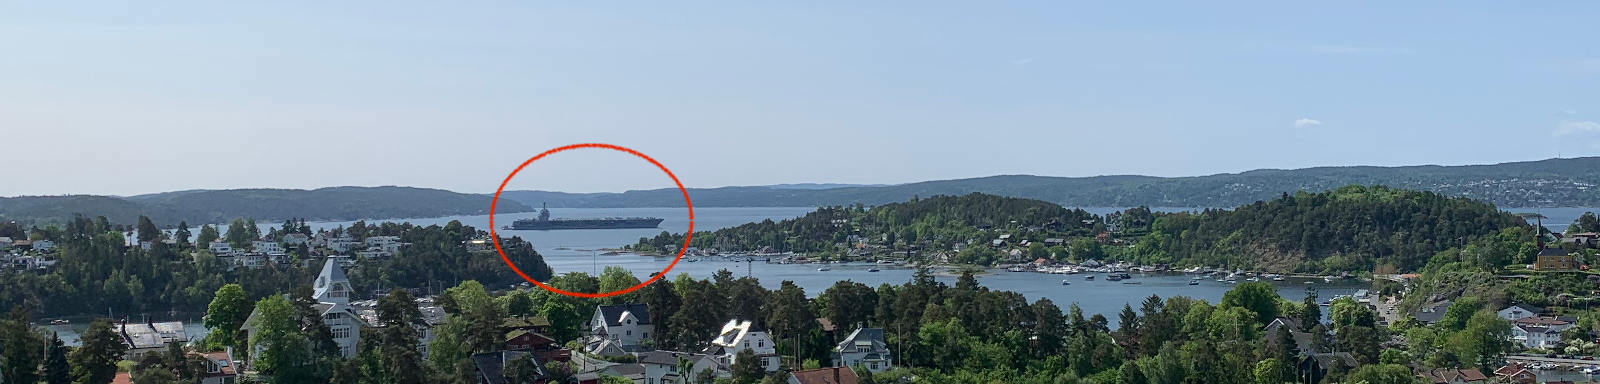 Hangarskipet som skjemmer ut Oslofjorden utenfor Ulvøya. Foto: R